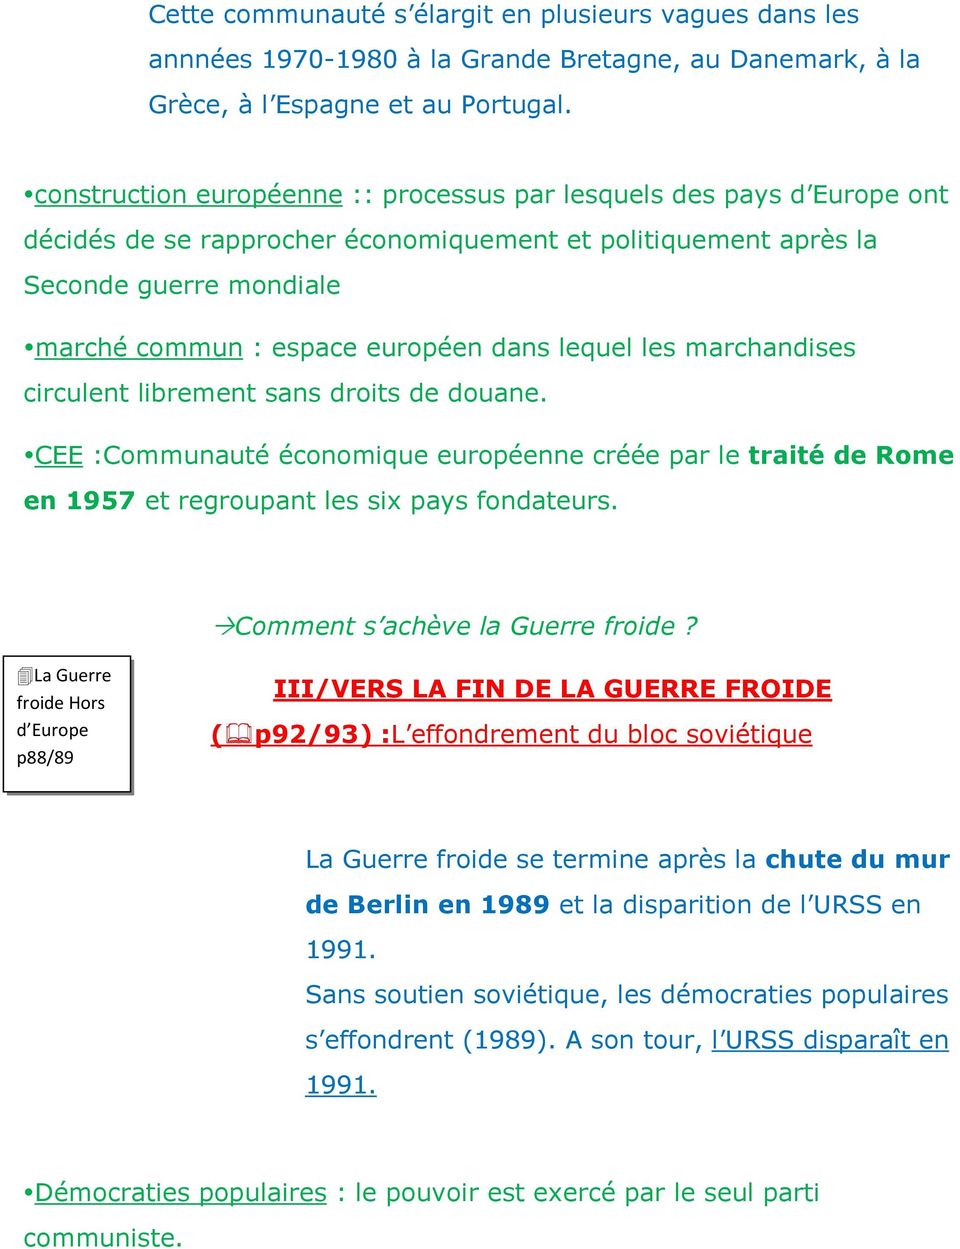 lequel les marchandises circulent librement sans droits de douane. CEE:Communauté économique européenne créée par le traité de Rome en 1957 et regroupant les six pays fondateurs.